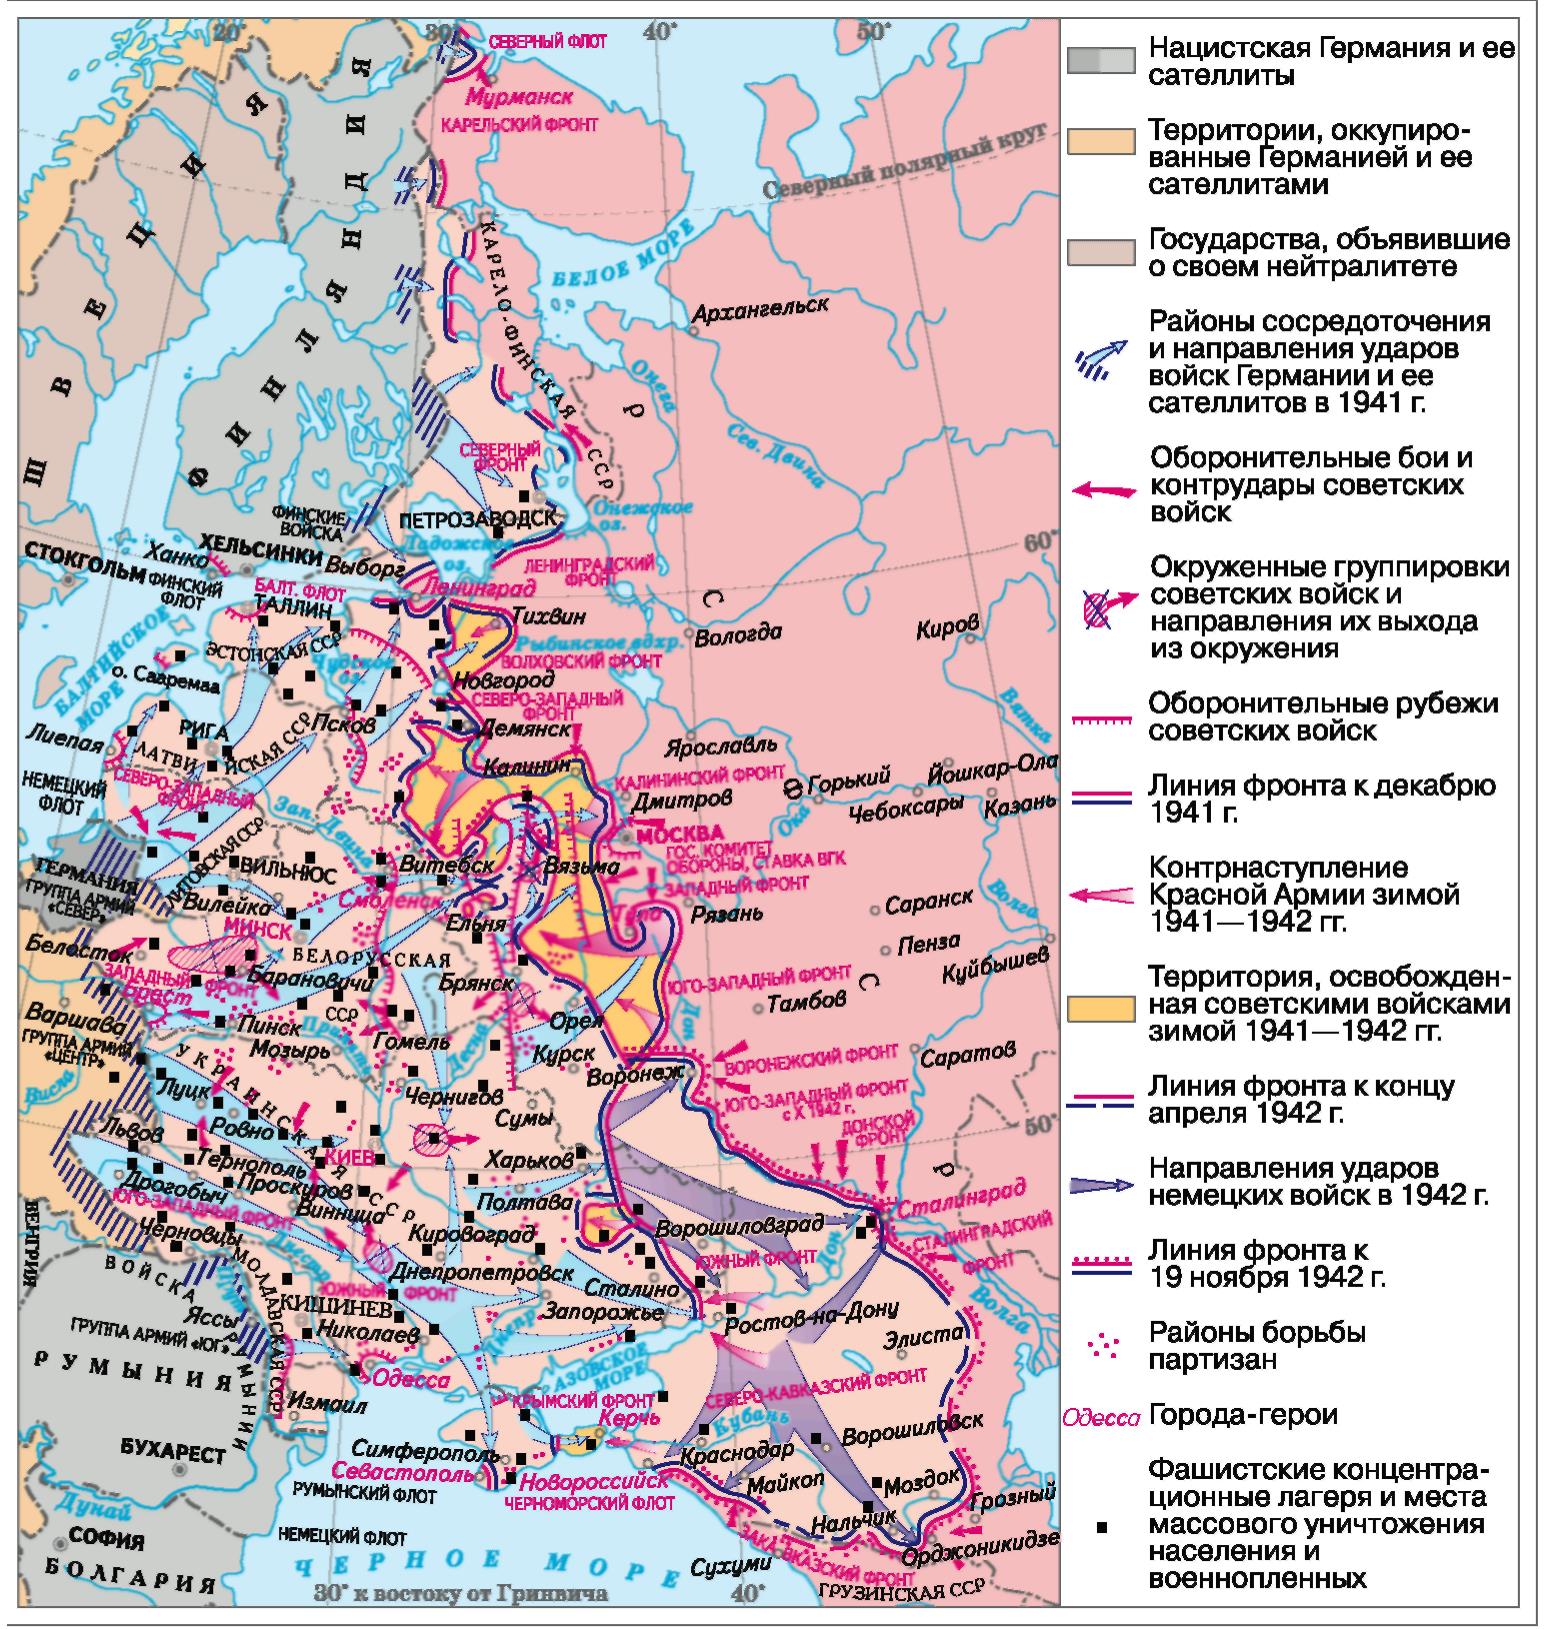 Фронты ссср в 1941 году. Карта линии фронта 1942. Линия фронта к 19 ноября 1942. Линия фронта в 1942 году на карте СССР. Линия фронта к ноябрю 1942 года.